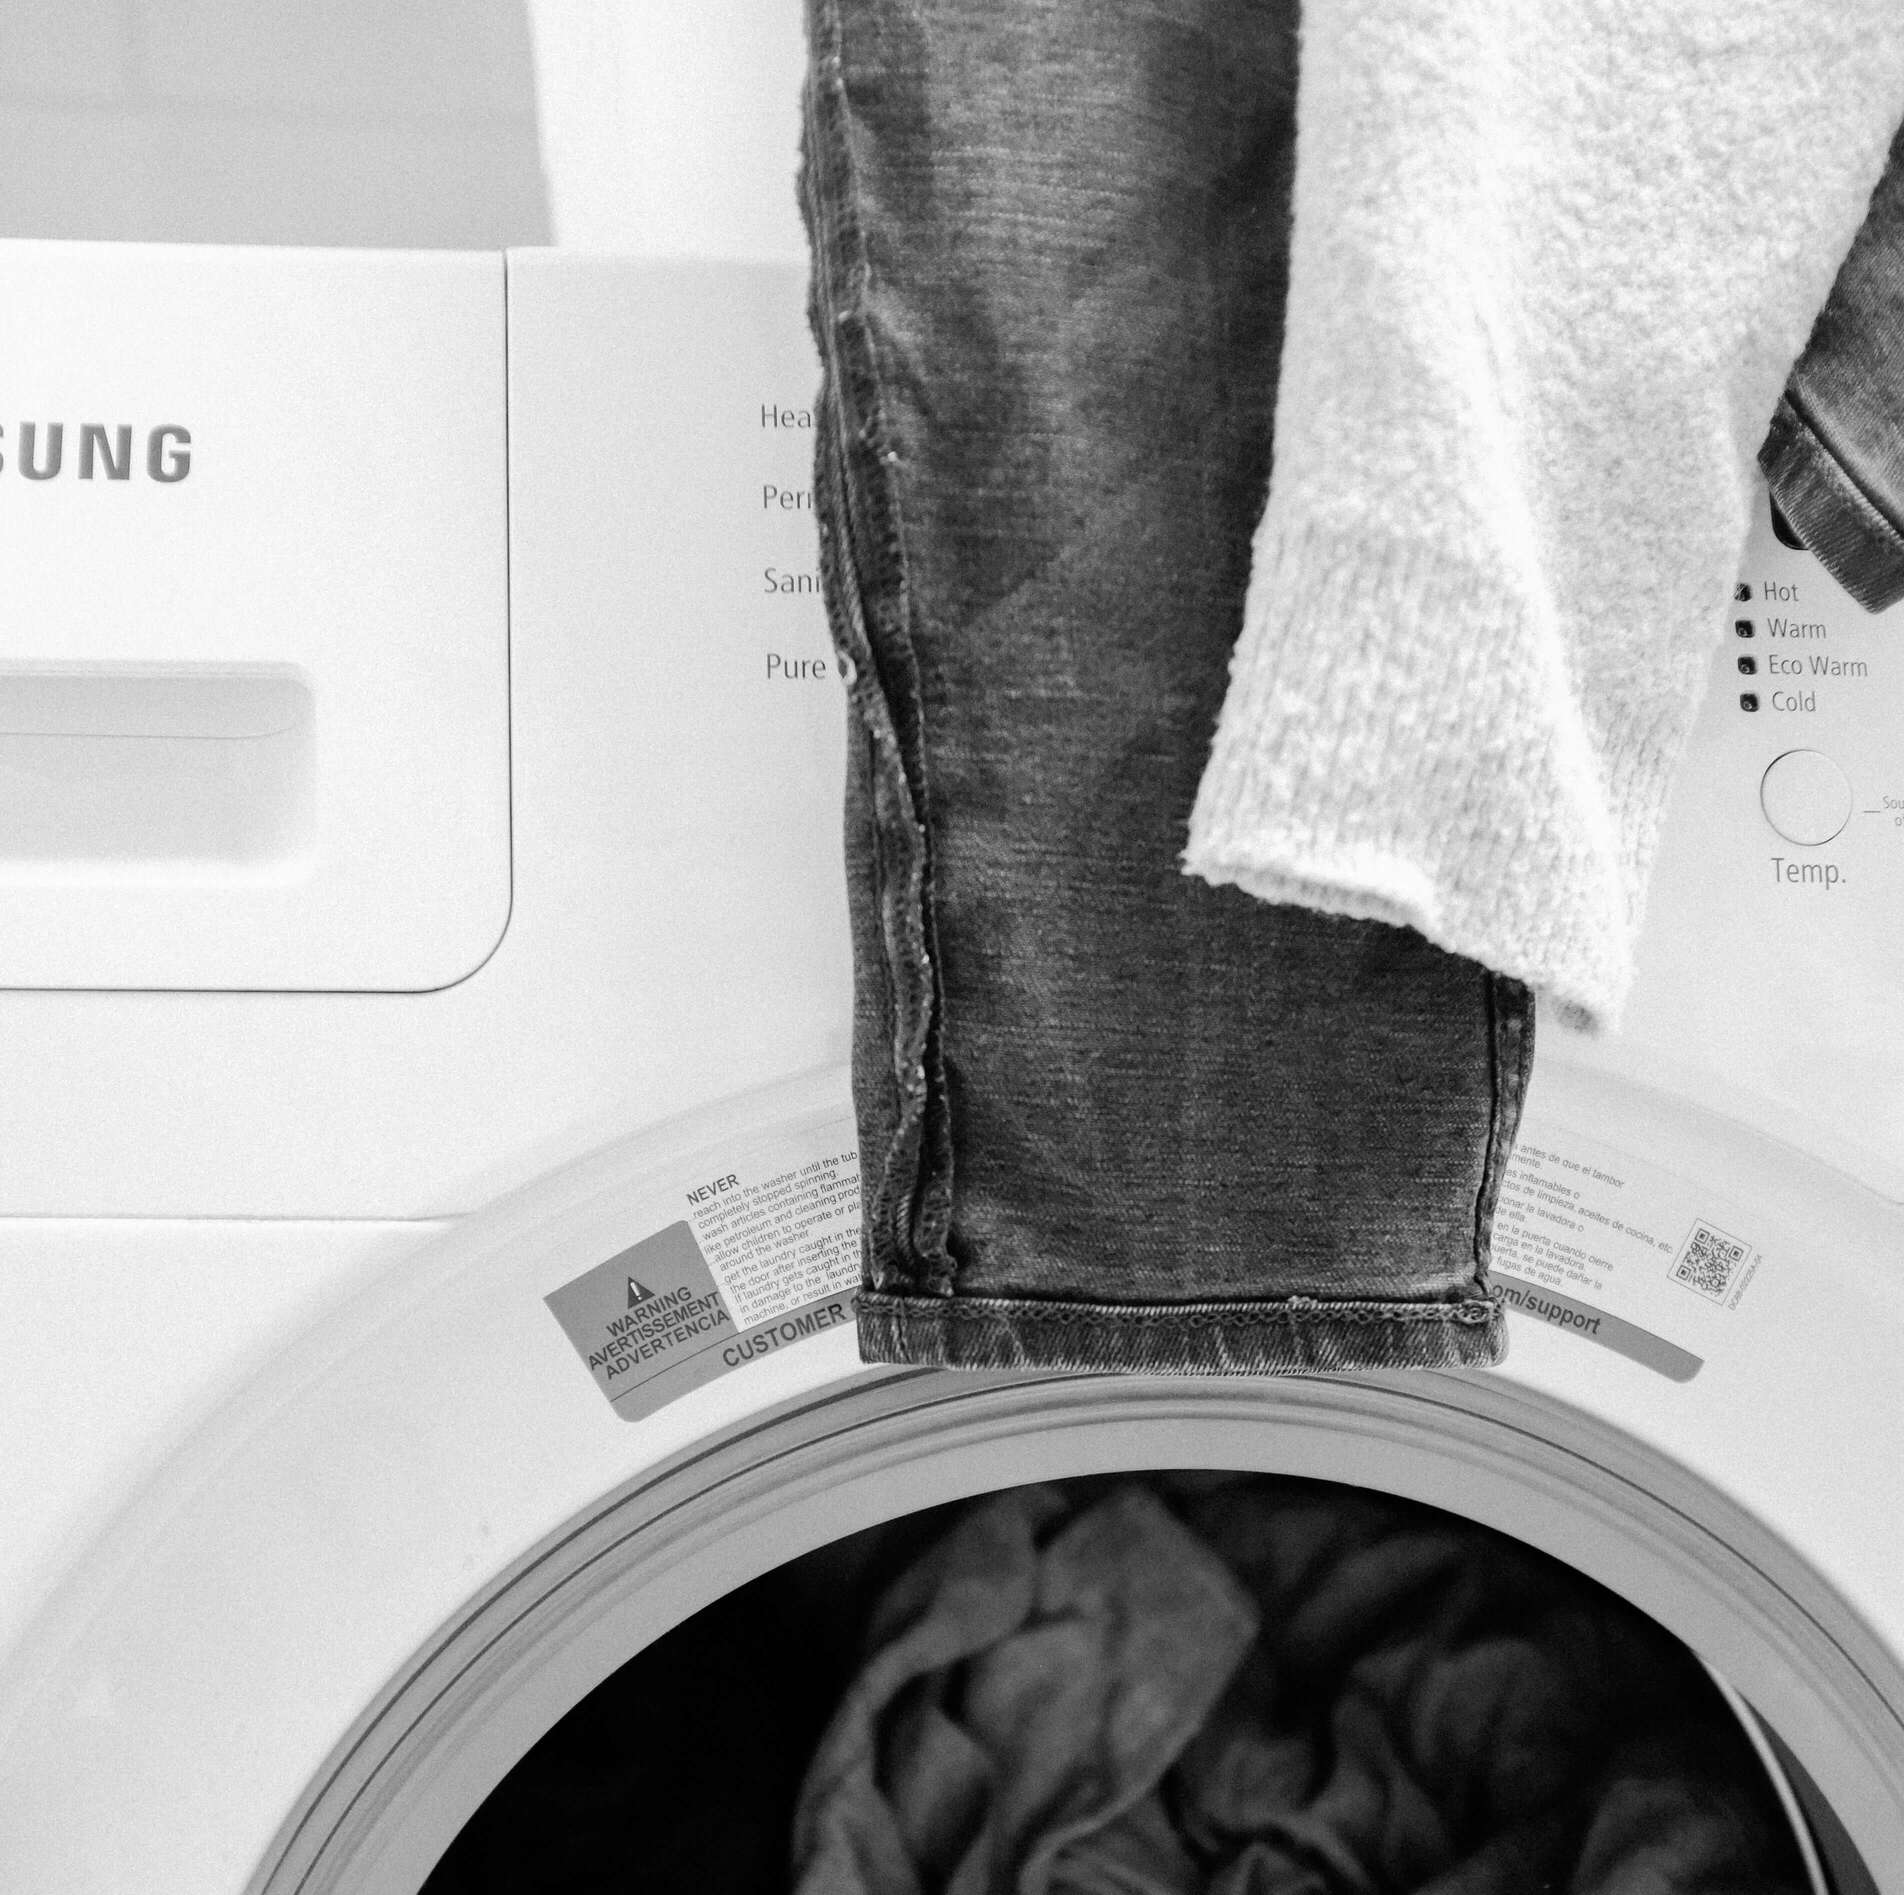 Pleje & | Lær du vasker og plejer tøjet